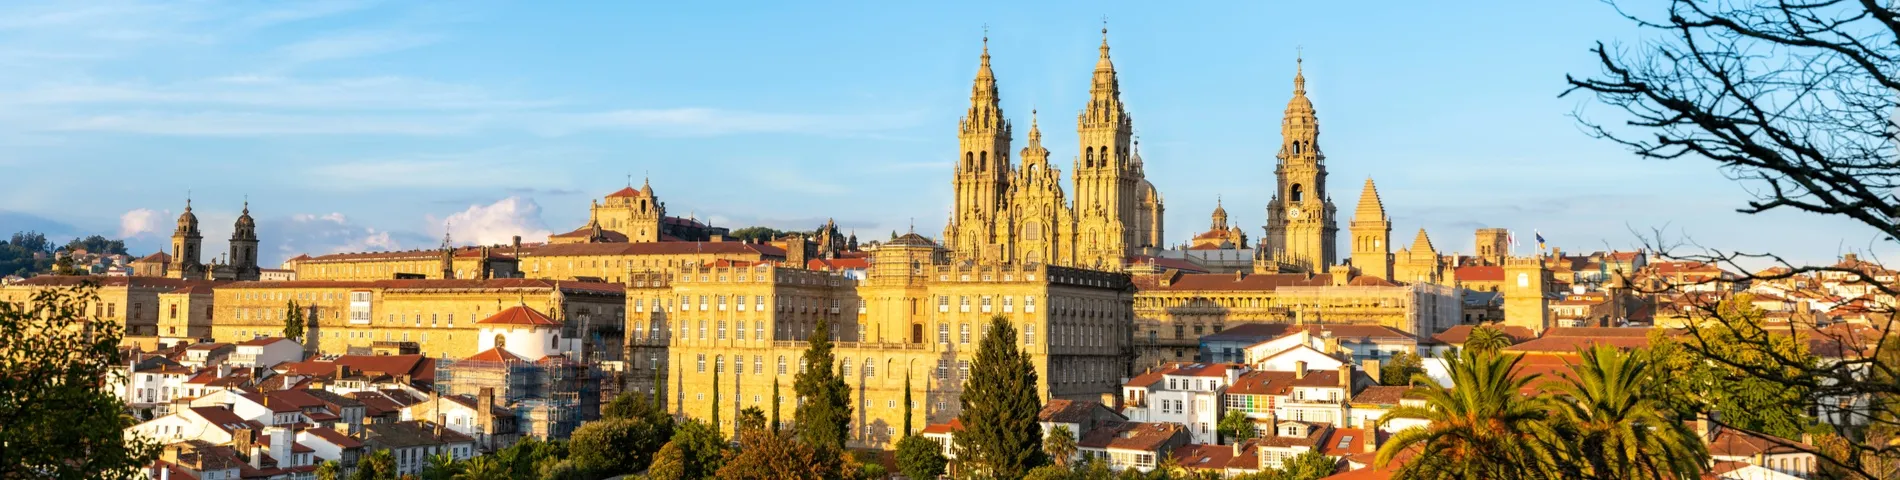 Santiago de Compostela - General